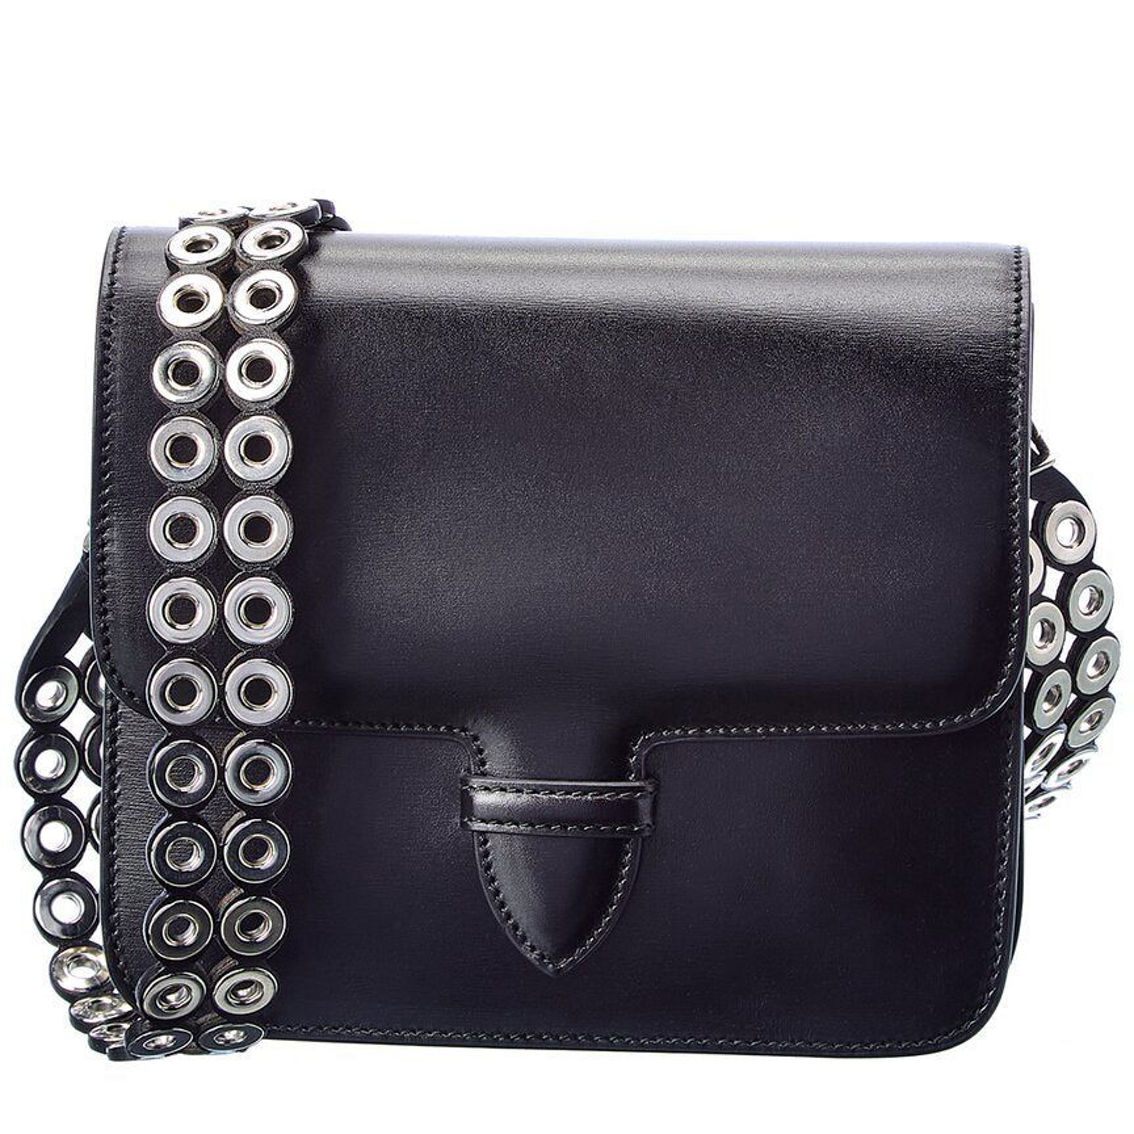 ALAIA Leather Shoulder Bag - Image 2 of 2